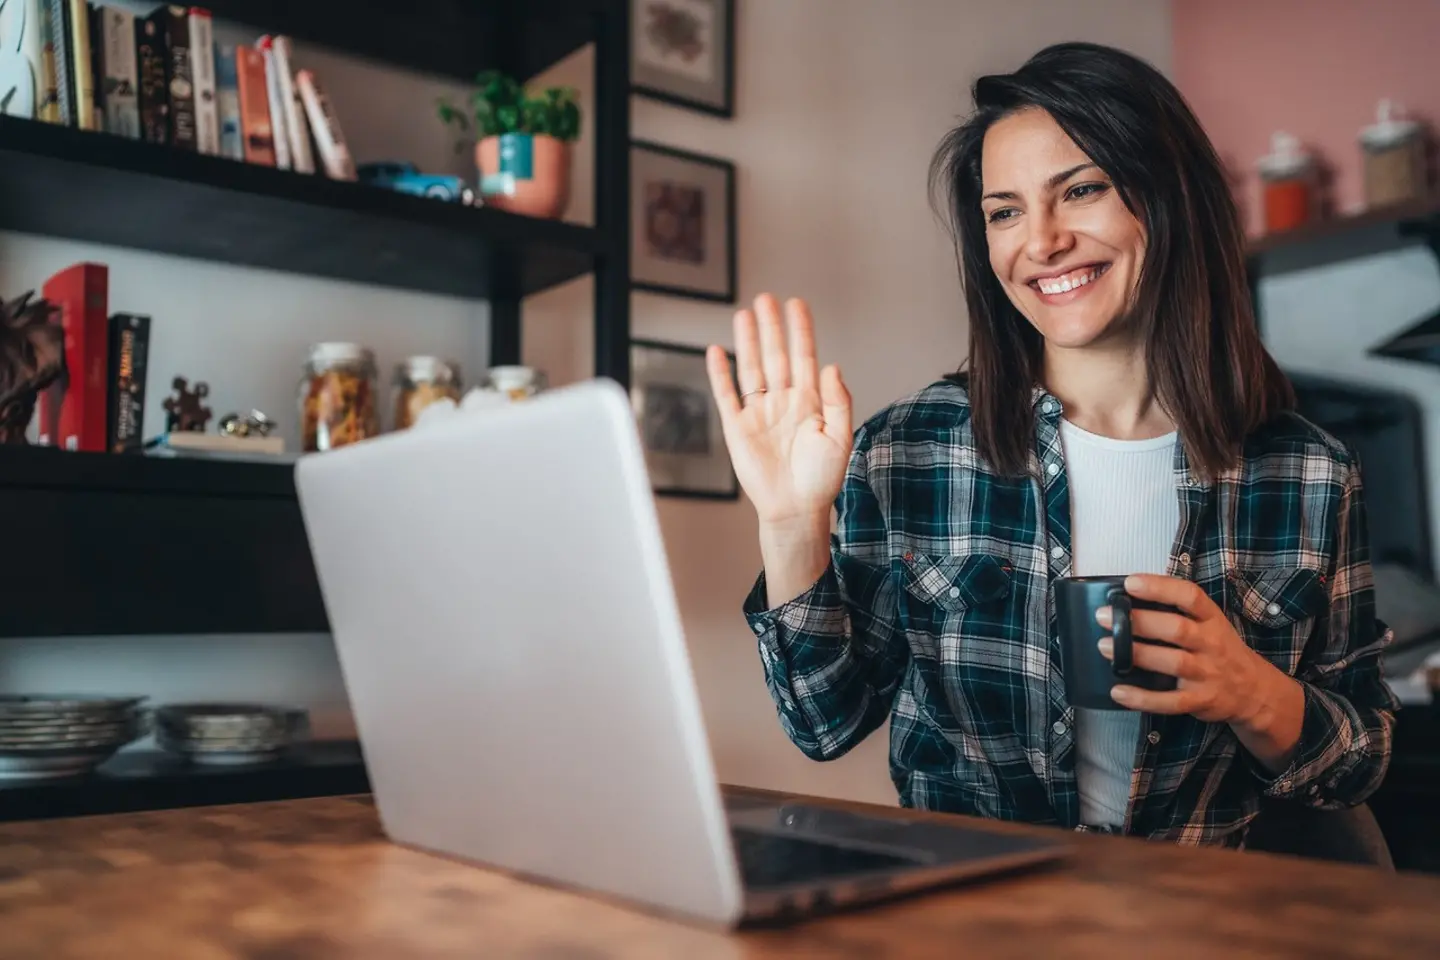 Eine lächelnde Frau sitzt an einem Schreibtisch vor einem Bildschirm und winkt in dessen Richtung.